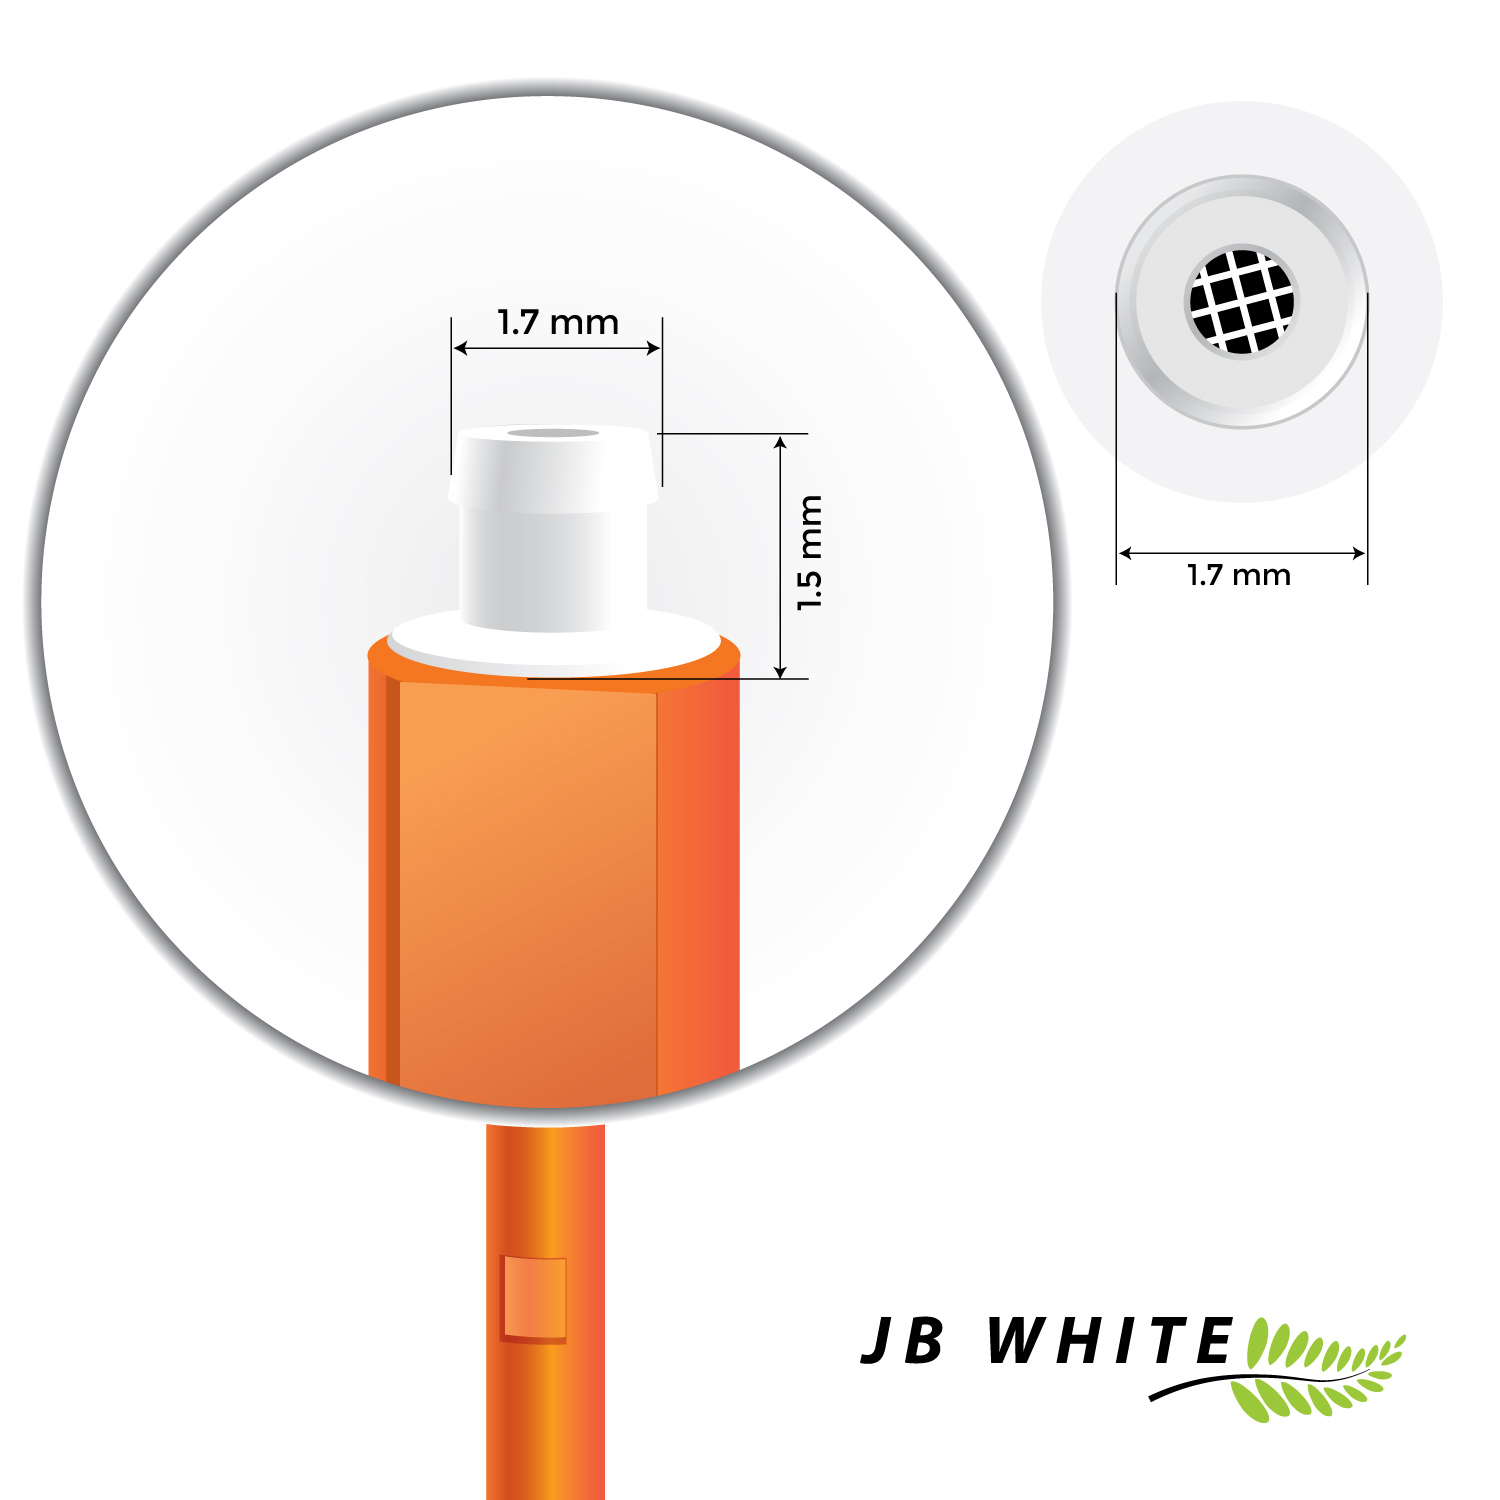 JB WHITE 32x Cerumenfilter (1,5 1,7 KIND Hörgeräte evoR / Starkey für Hear bitte x für messen) evo Clear - Hörgeräte und Cerumenfilter mm